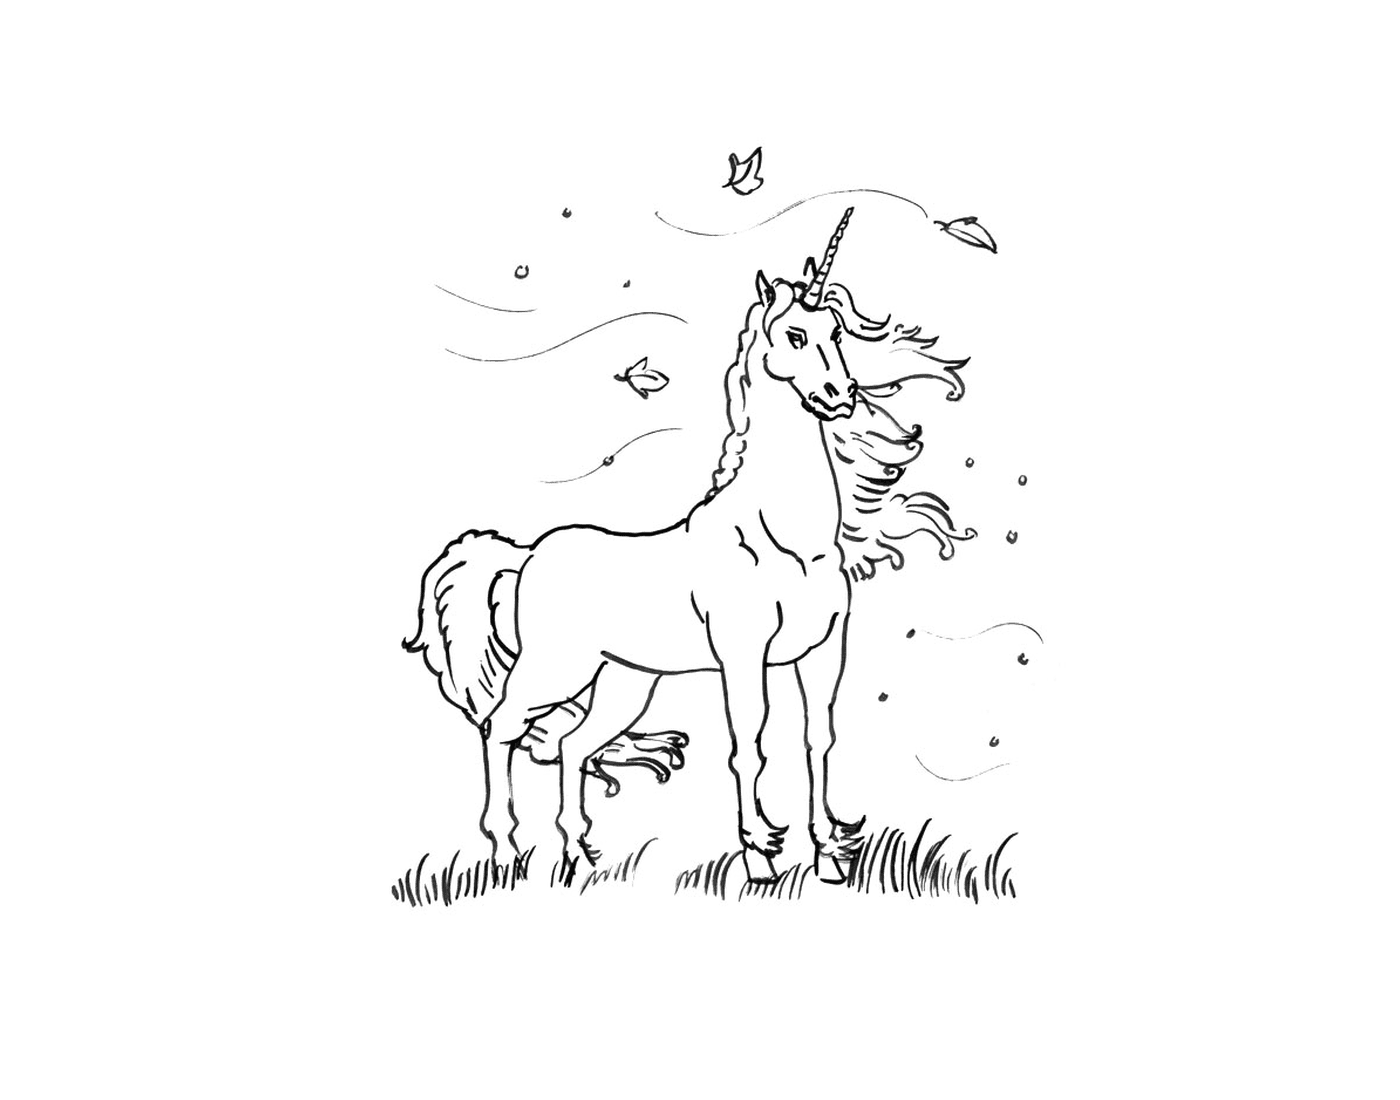  unicorn standing in a field 